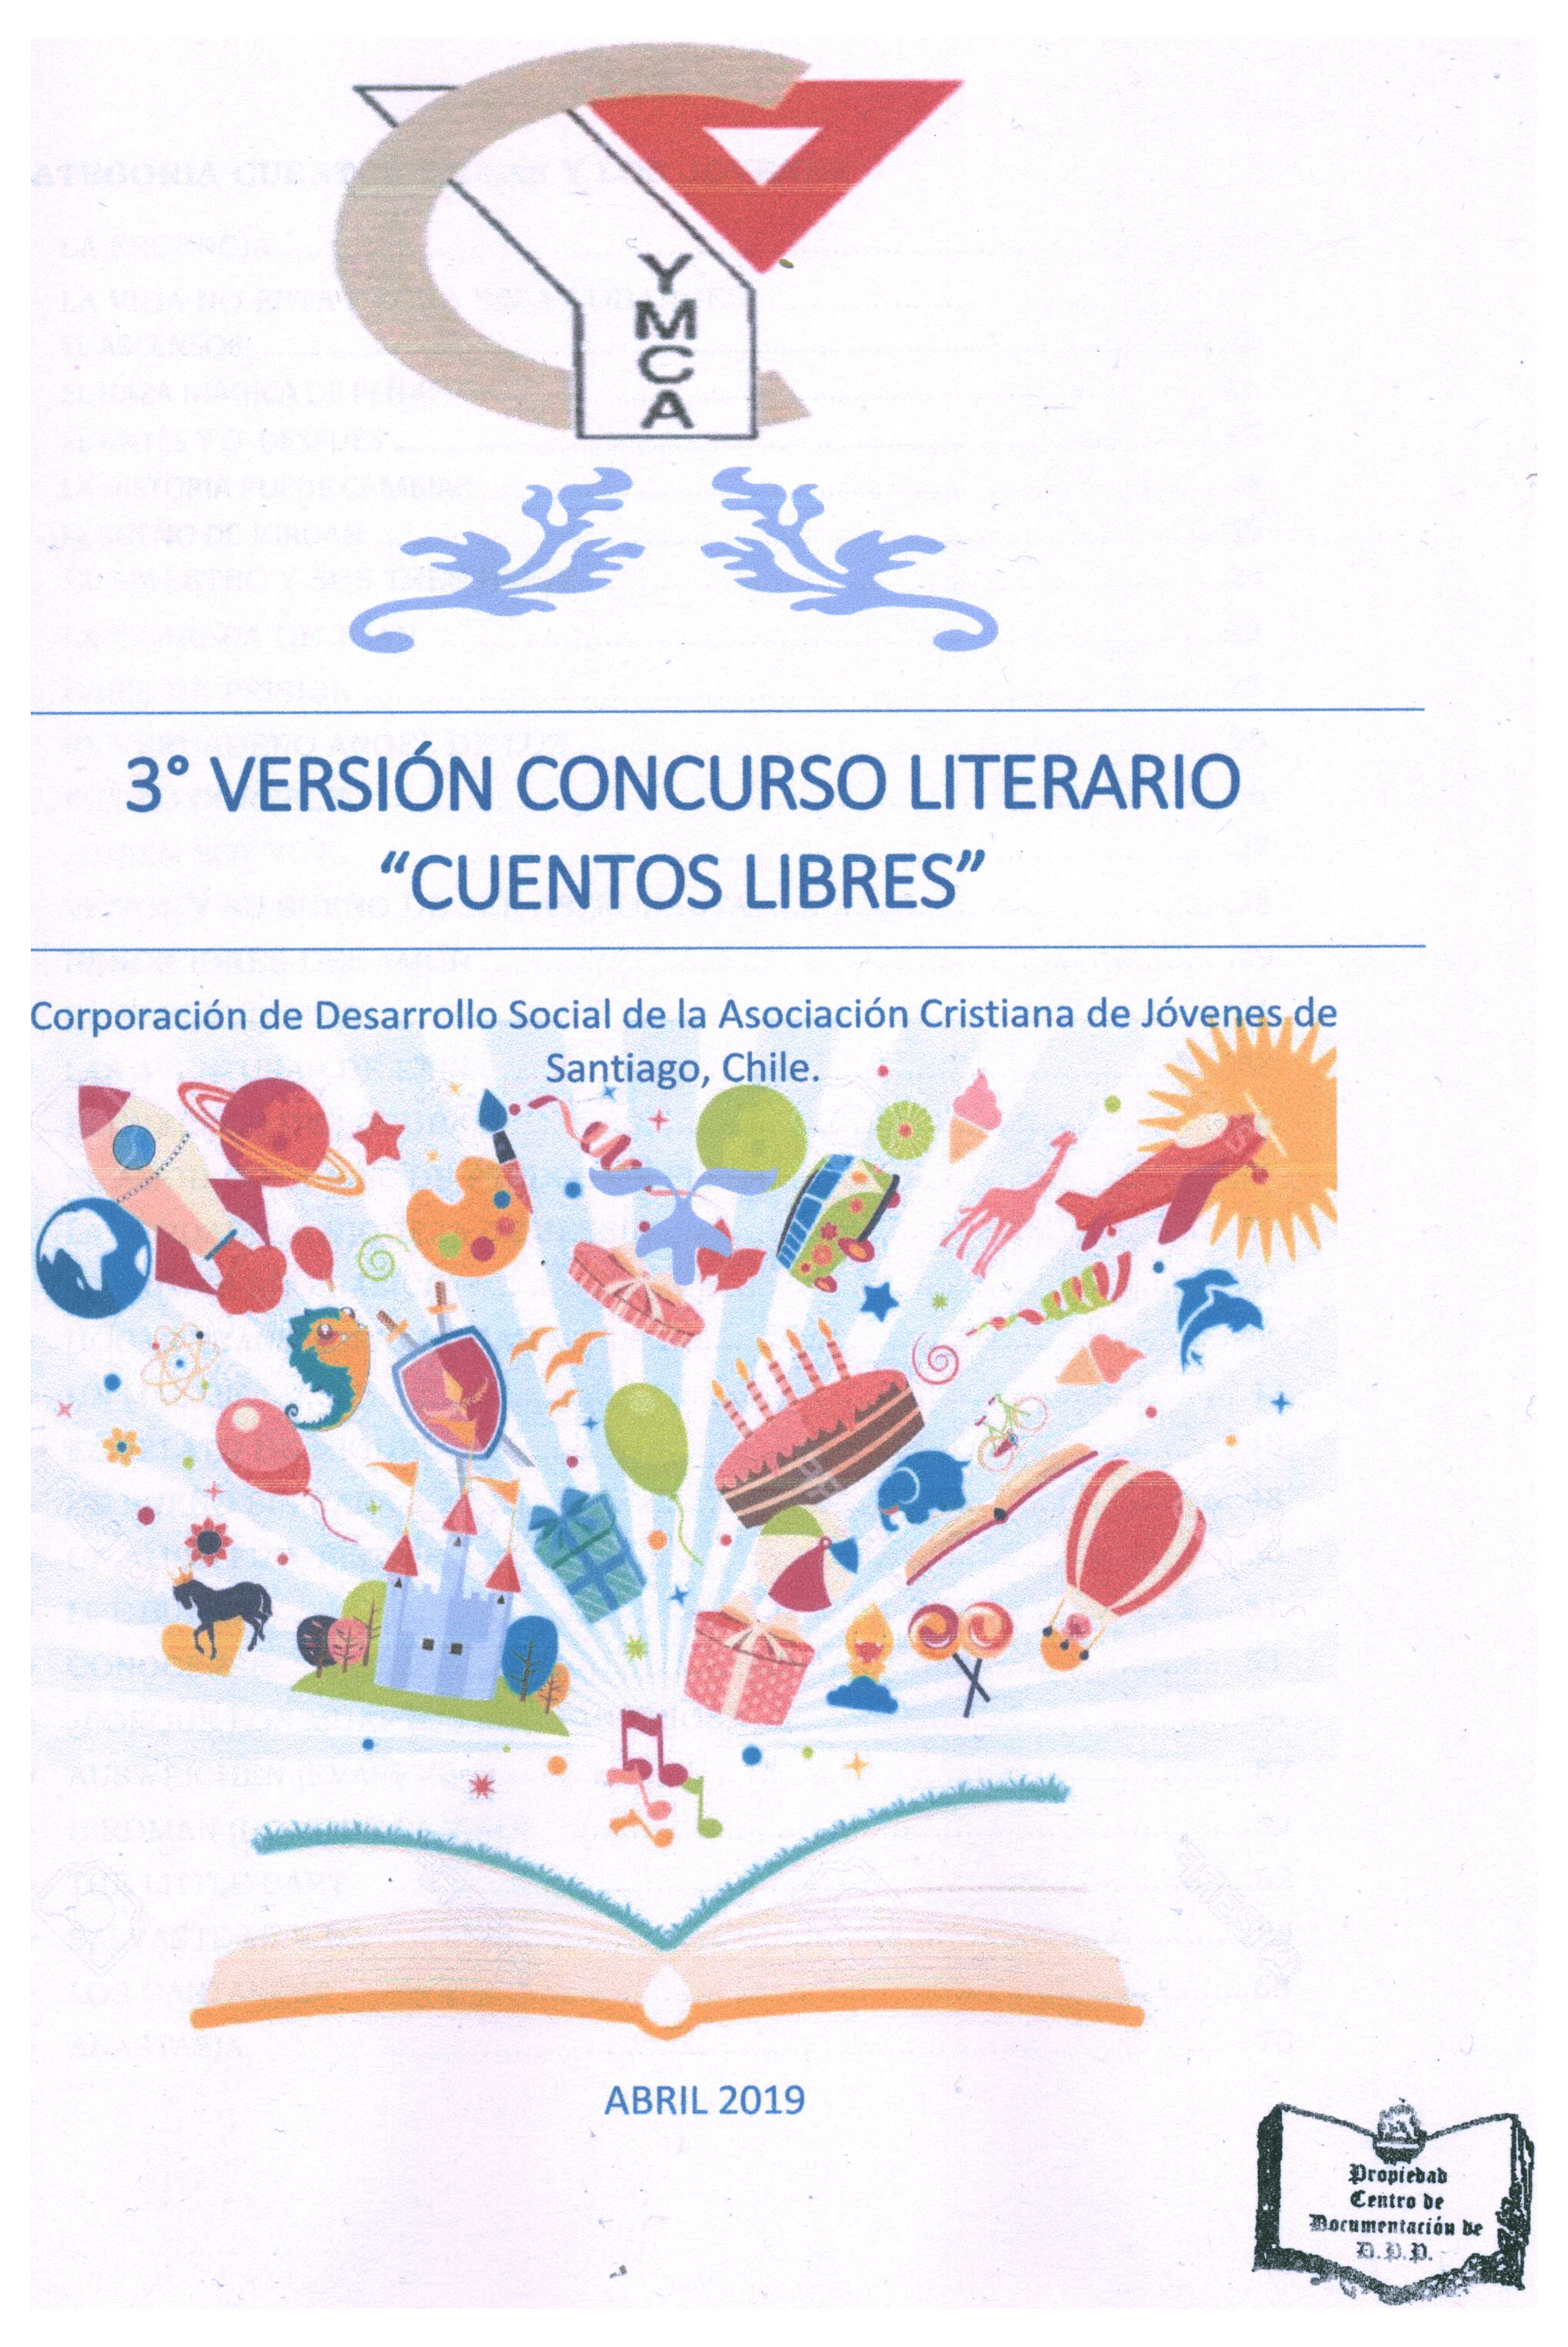 3° Versión concurso literario "cuentos libres"